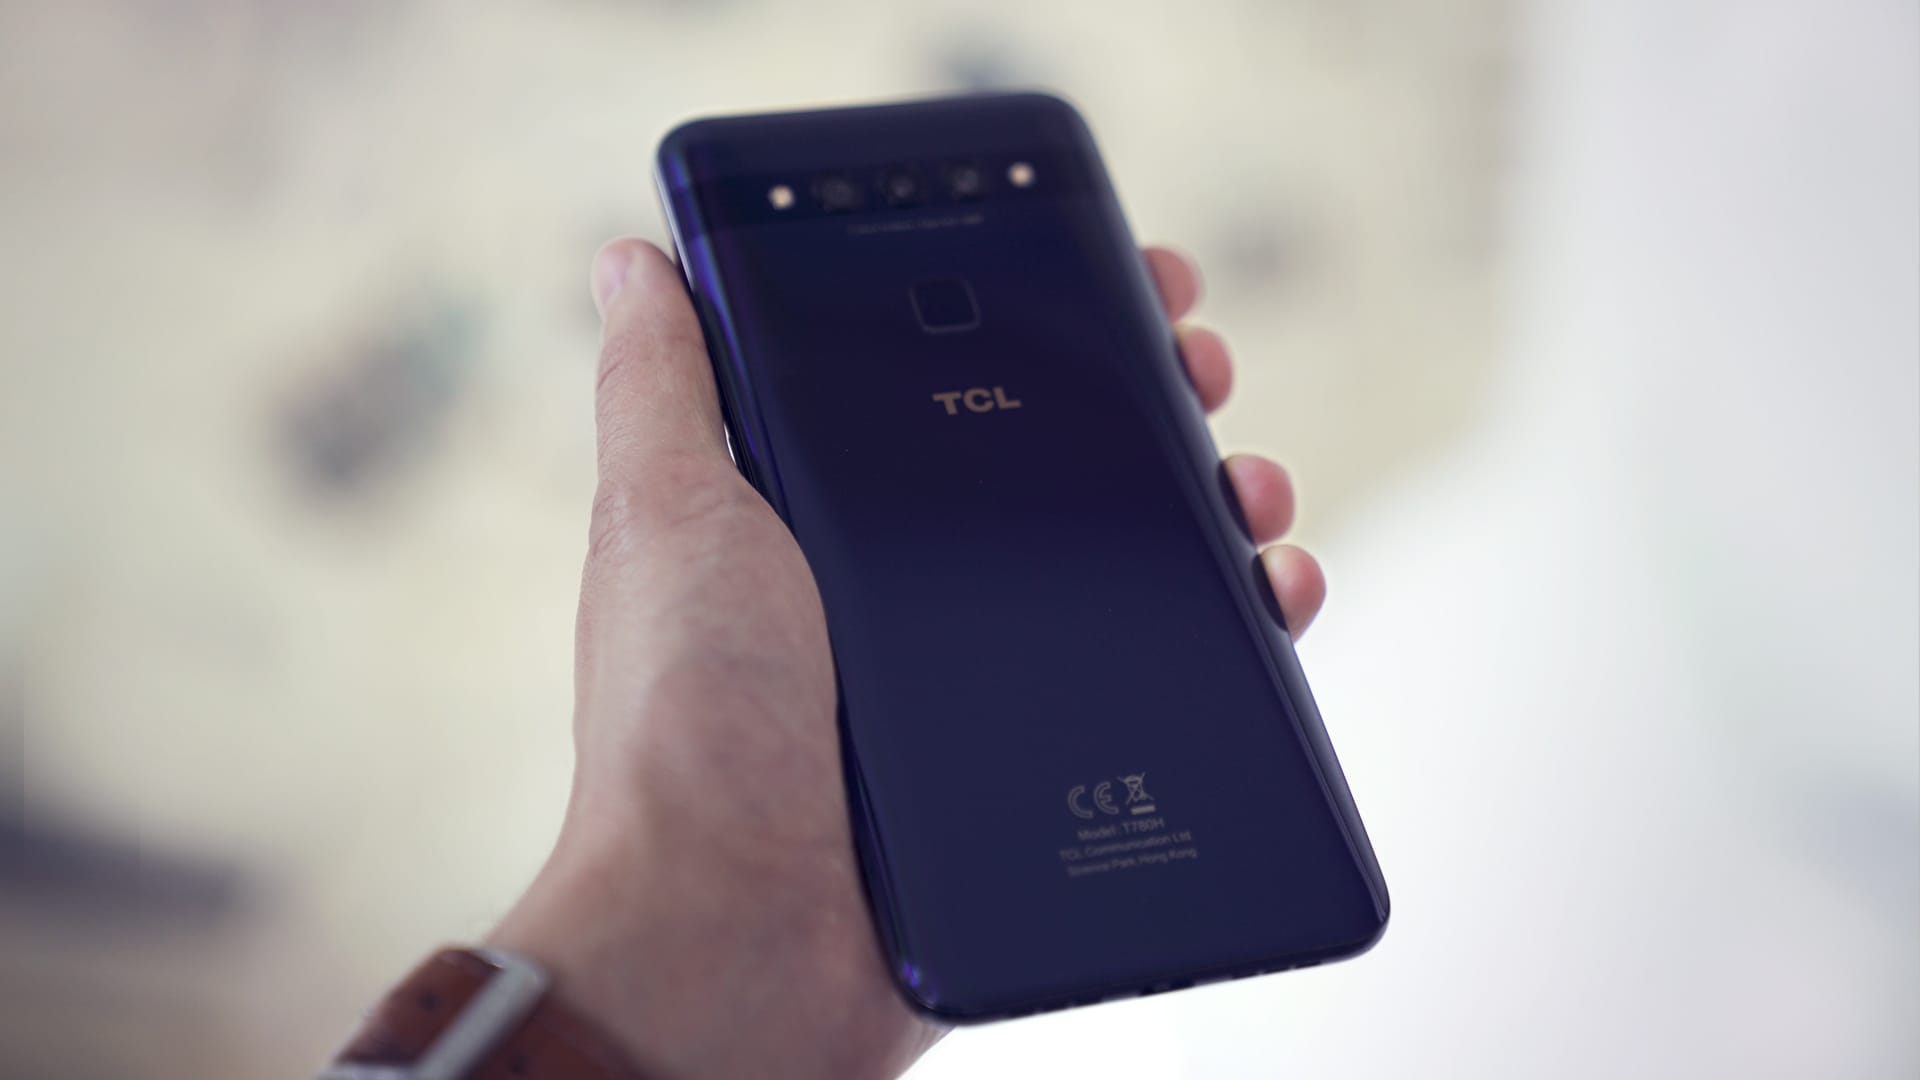 Das TCL Plex ist in Deutschland für 329 Euro verfügbar und erscheint in den Farben Obsidian Black und Opal White. Ein Update zu Android 10 wird laut TCL nachgeliefert, Sicherheitspatches sollen mindestens alle drei Monate veröffentlicht werden.